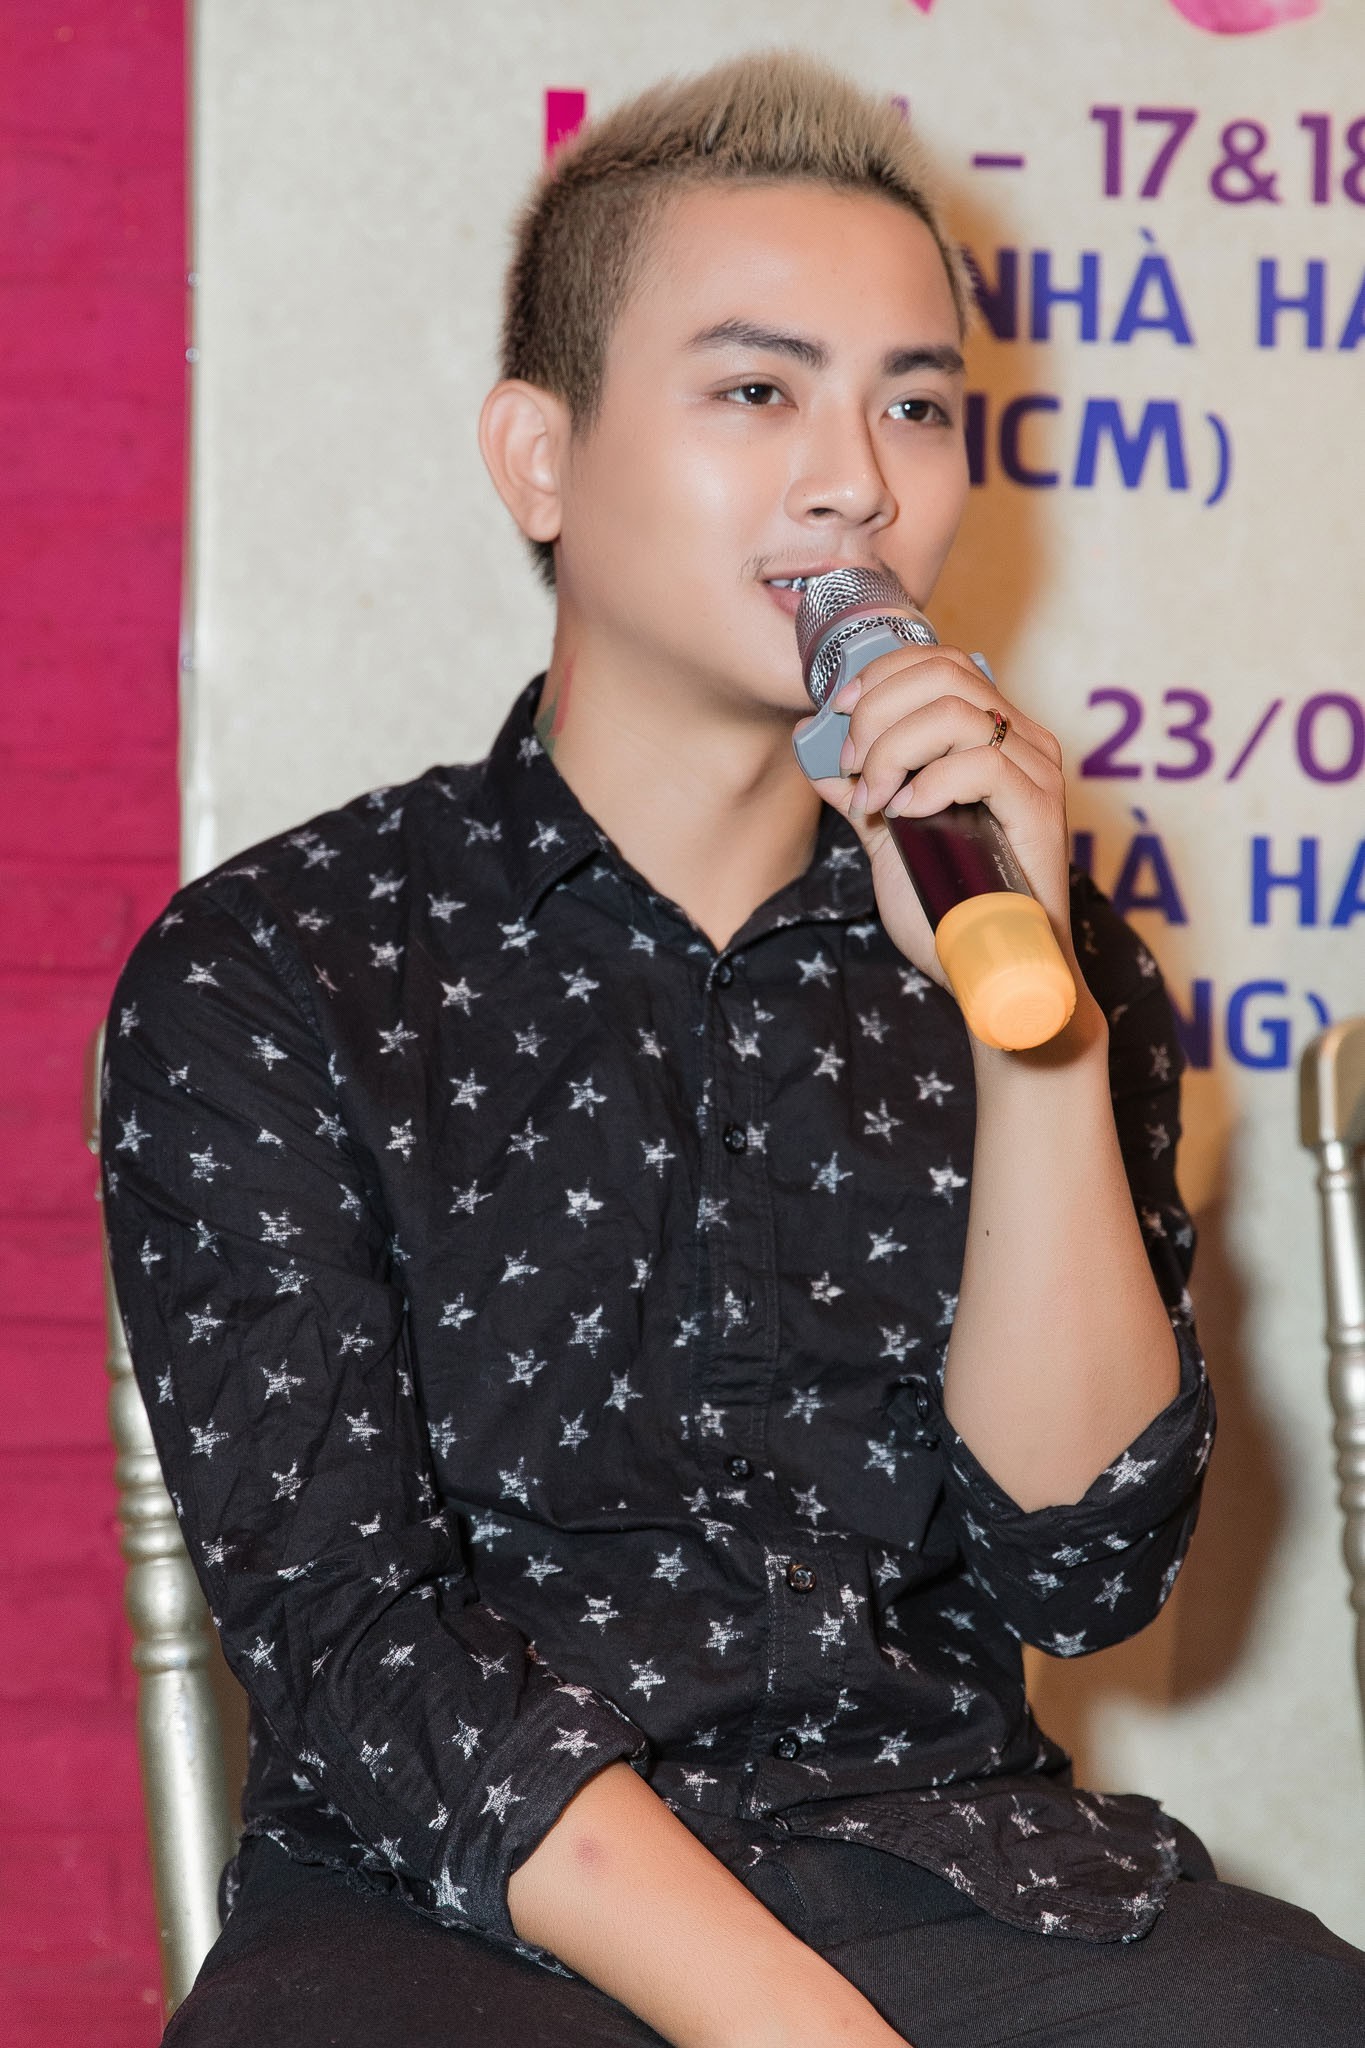 Hoài Lâm là một ca sĩ gốc Hải Phòng và đang được yêu thích trong cộng đồng yêu nhạc. Cùng xem hình ảnh của anh ta để tìm hiểu thêm về phong cách trình diễn của anh ta và các bản hit được khán giả yêu thích.